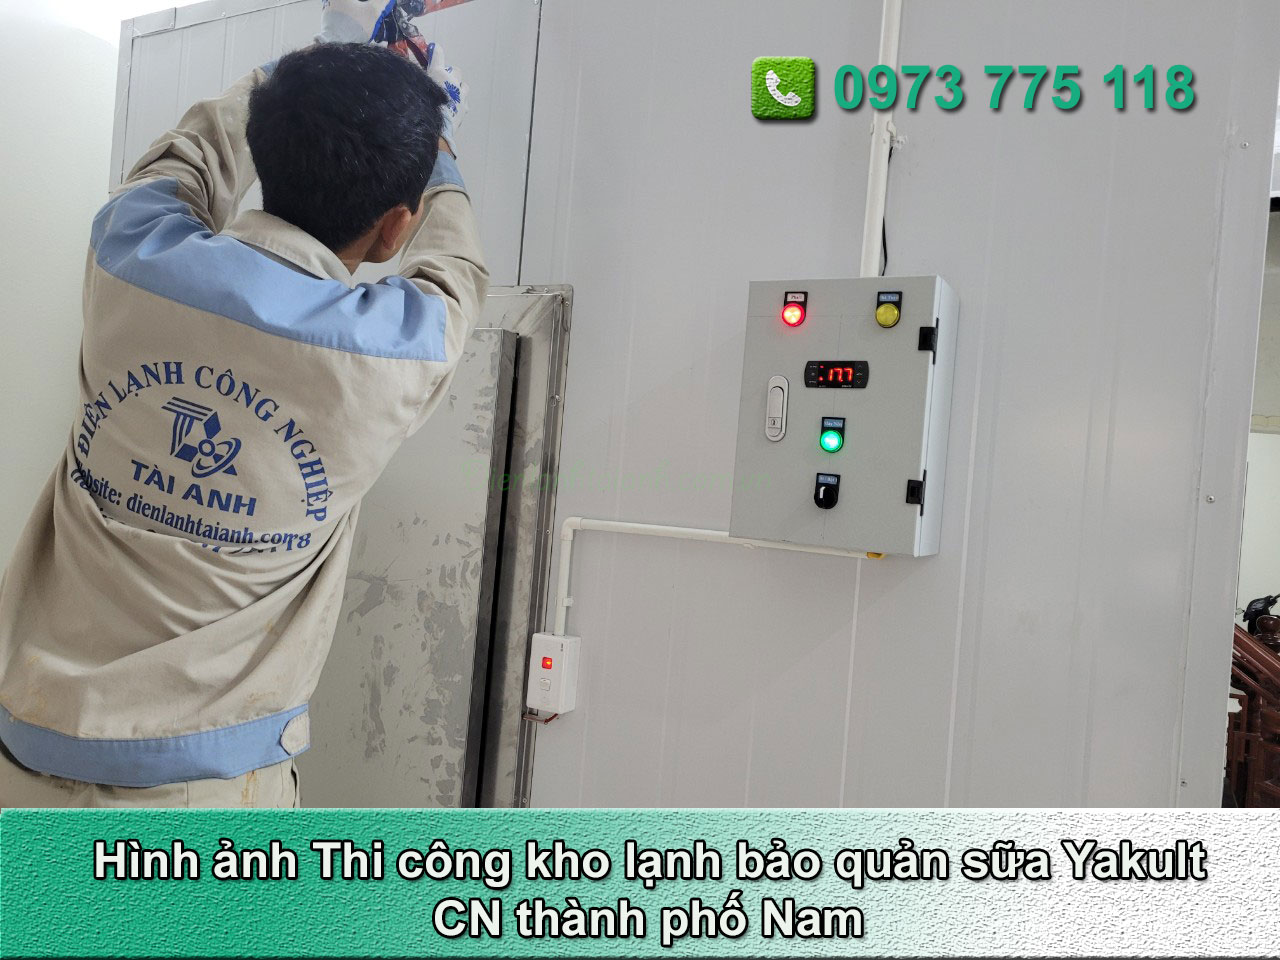 Thi công kho lạnh bảo quản sữa Yakult tại thành phố Nam Định